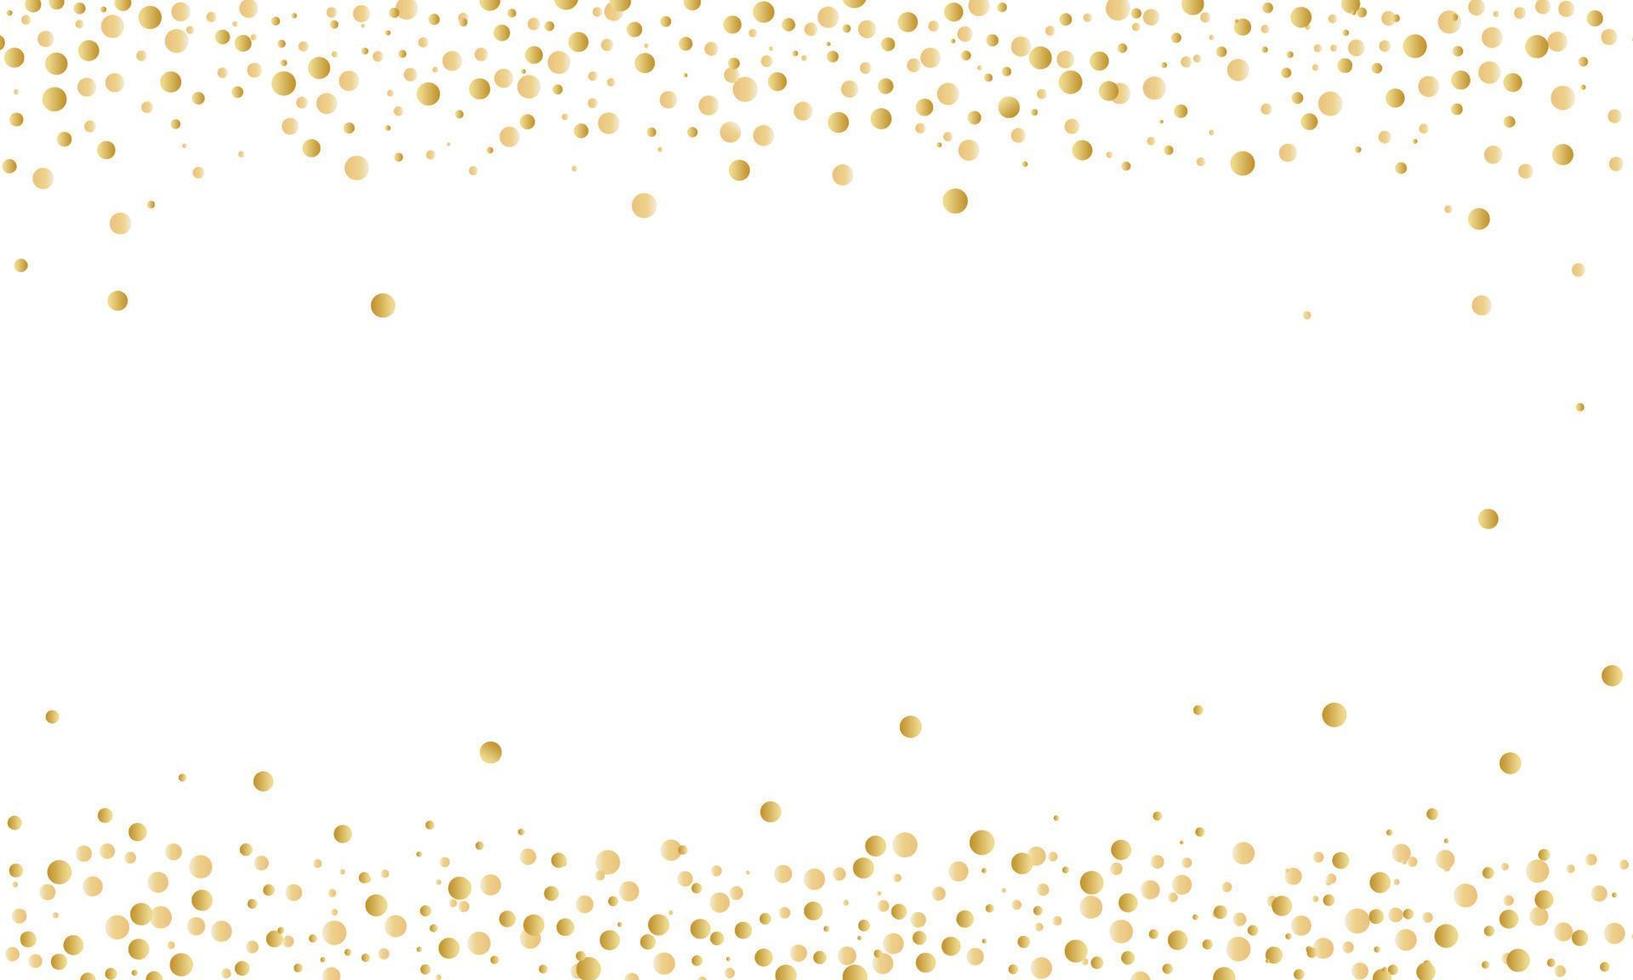 fondo de felicitación con confeti dorado arriba y abajo. ilustración vectorial vector